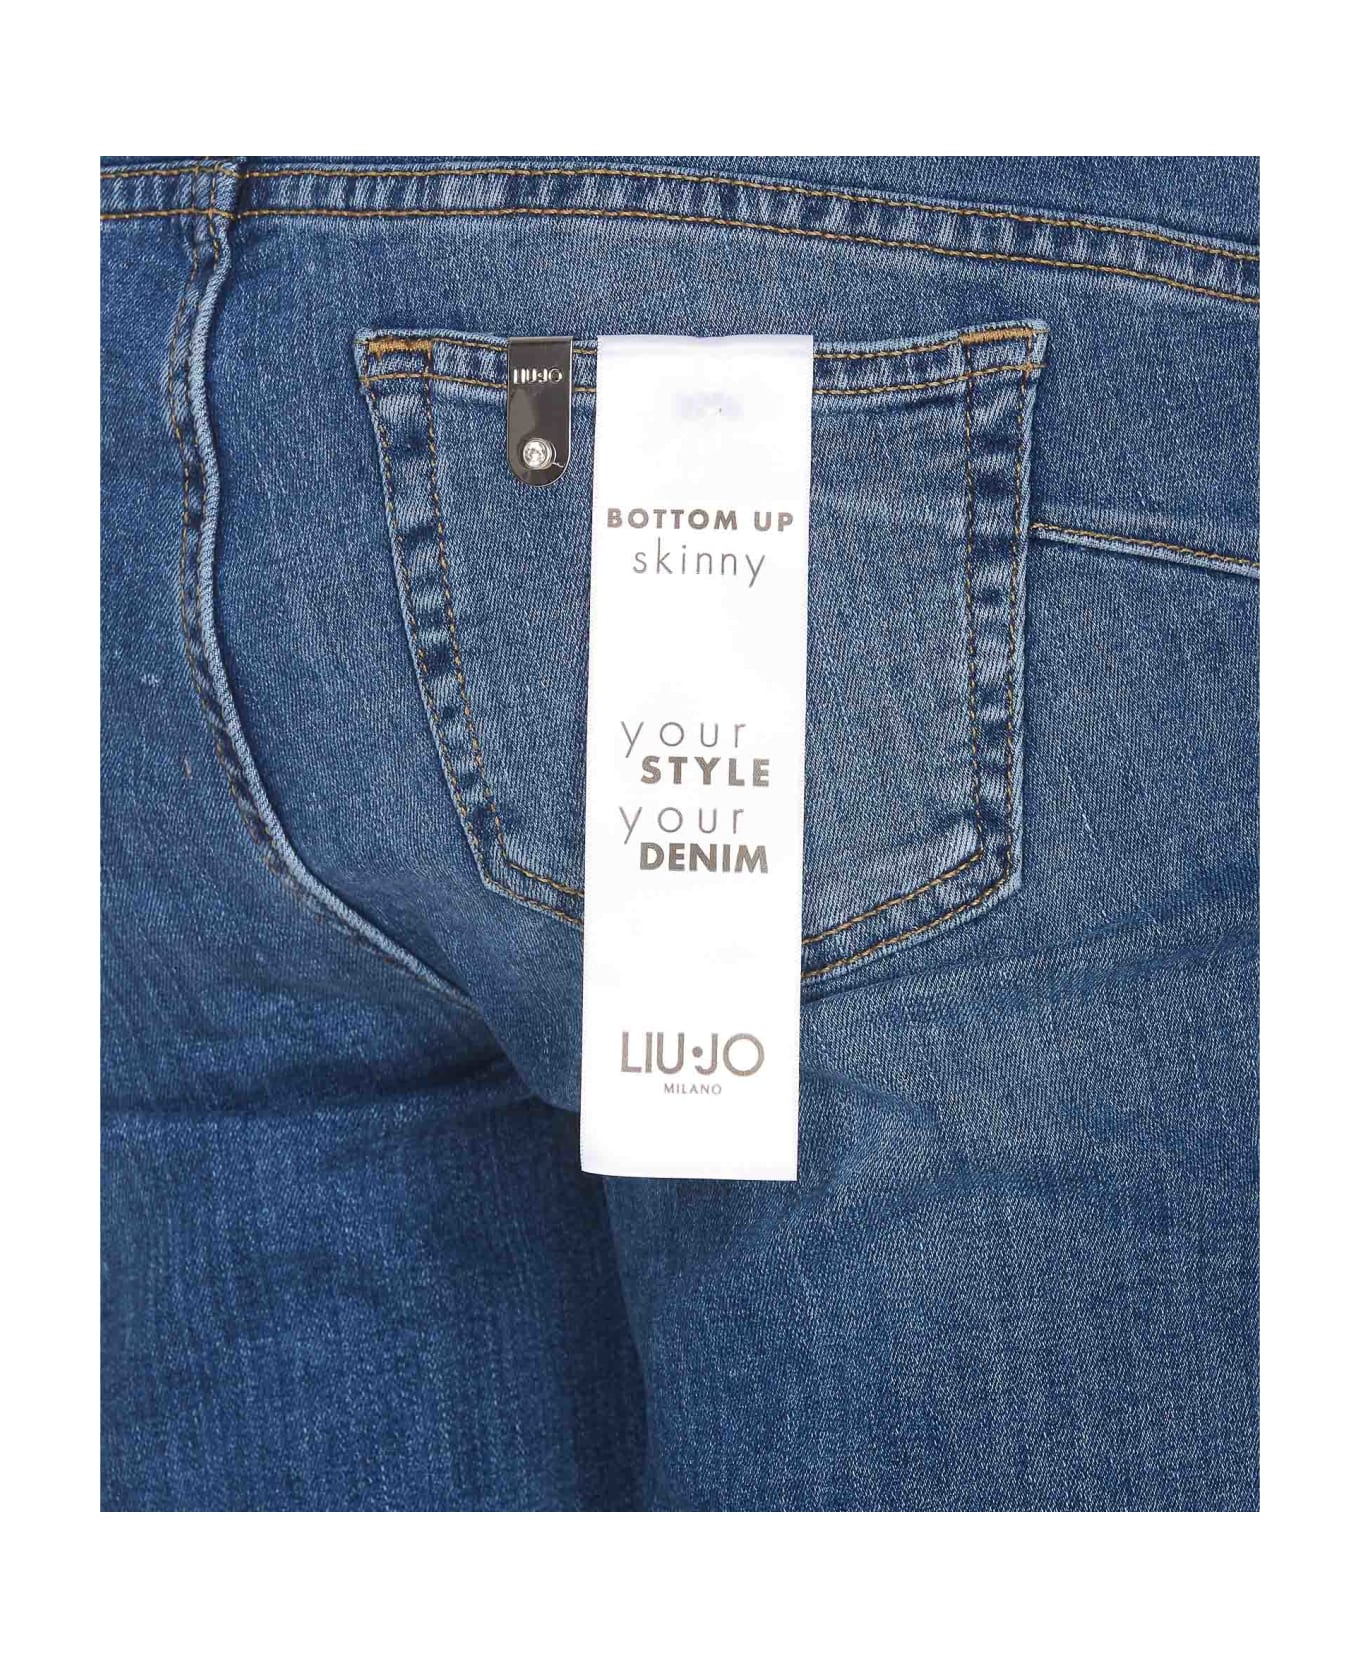 Liu-Jo New Classy Denim Jeans - Blue デニム